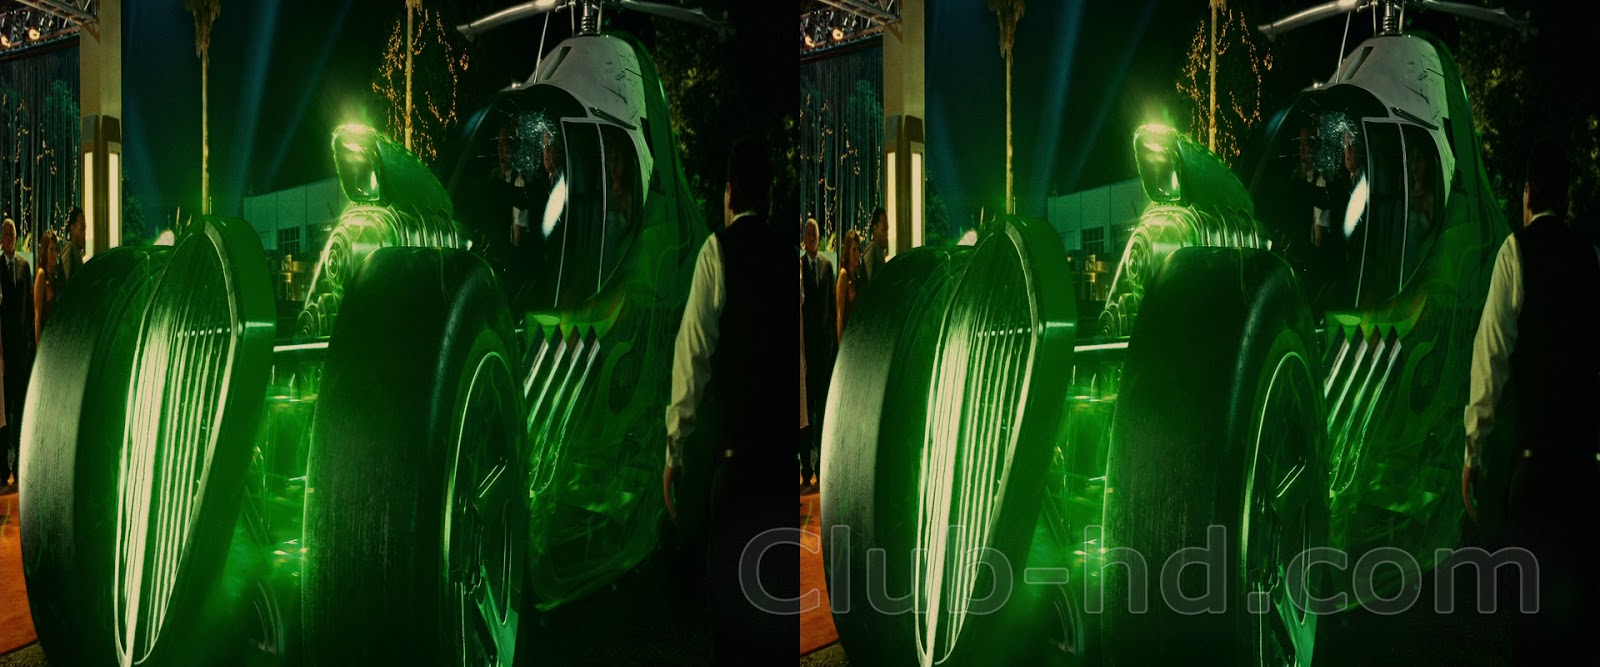 Green Lantern (2011) 3D H-SBS 1080p BDRip Dual Latino-Inglés [Subt. Esp] (Ciencia ficción. Fantástico. Acción)